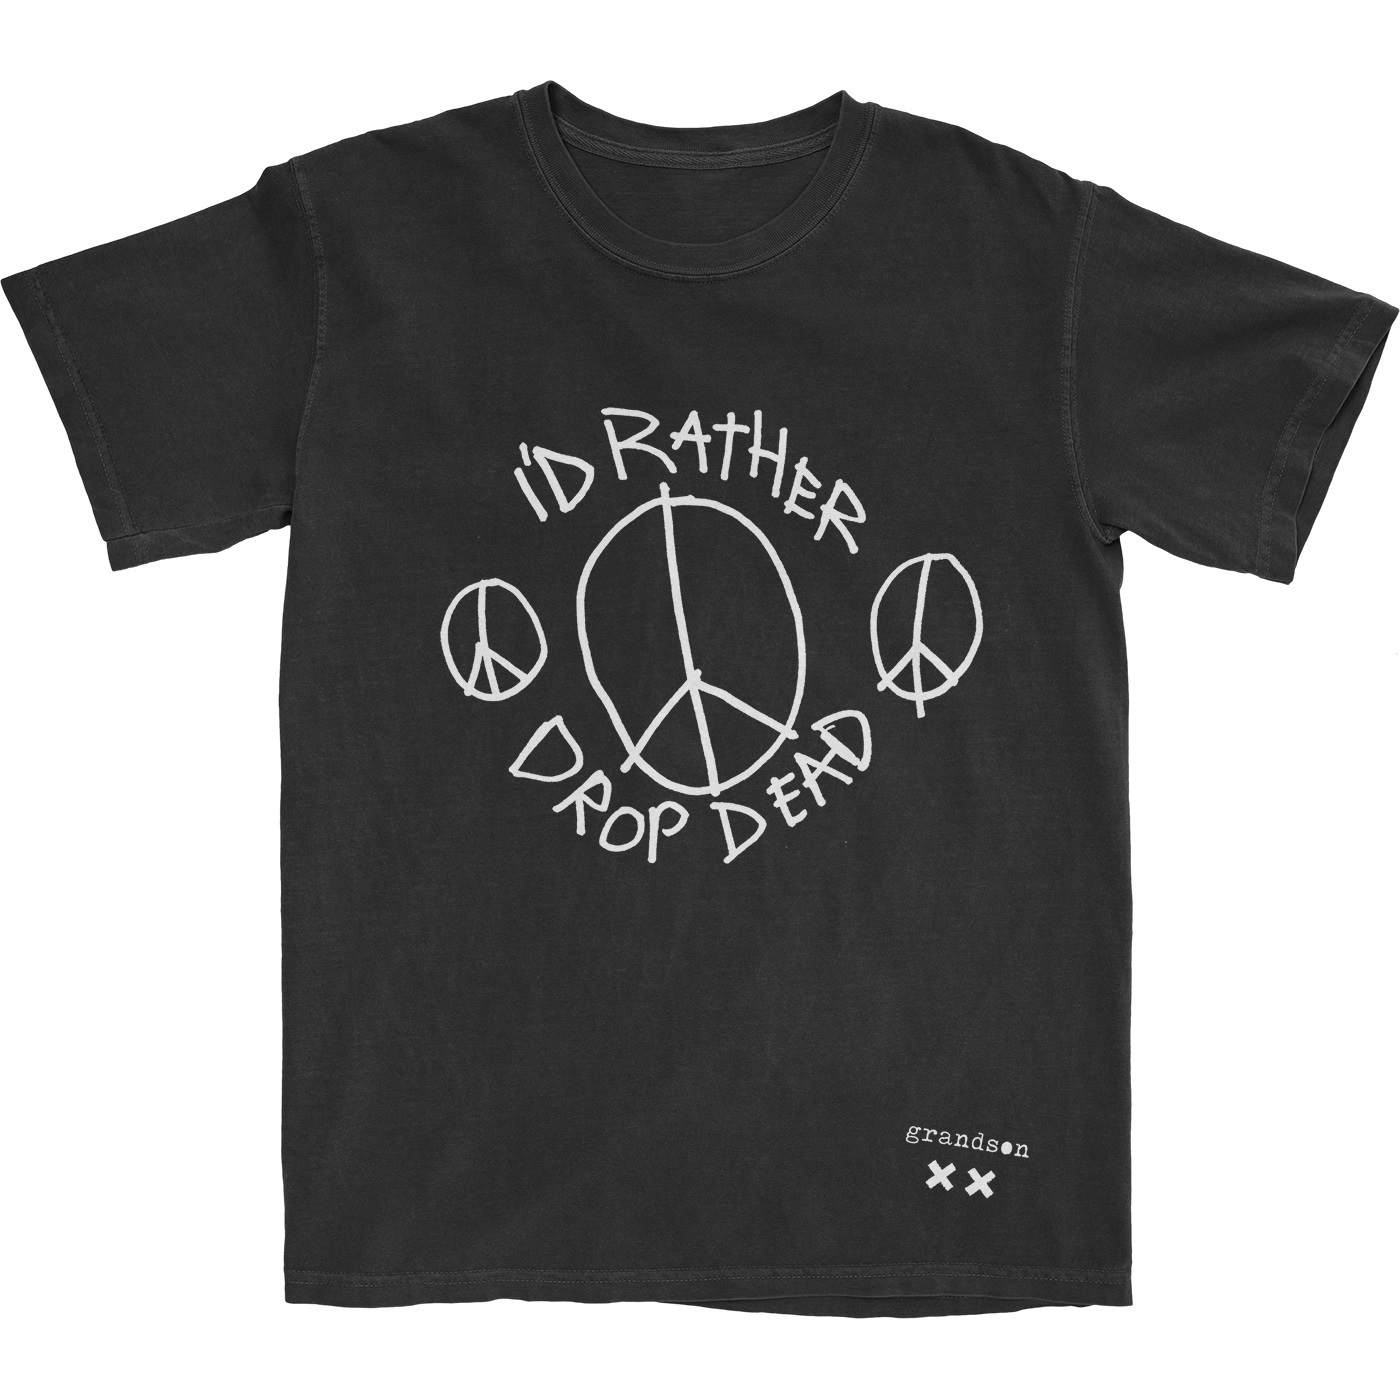 grandson Drop Dead Peace T-Shirt